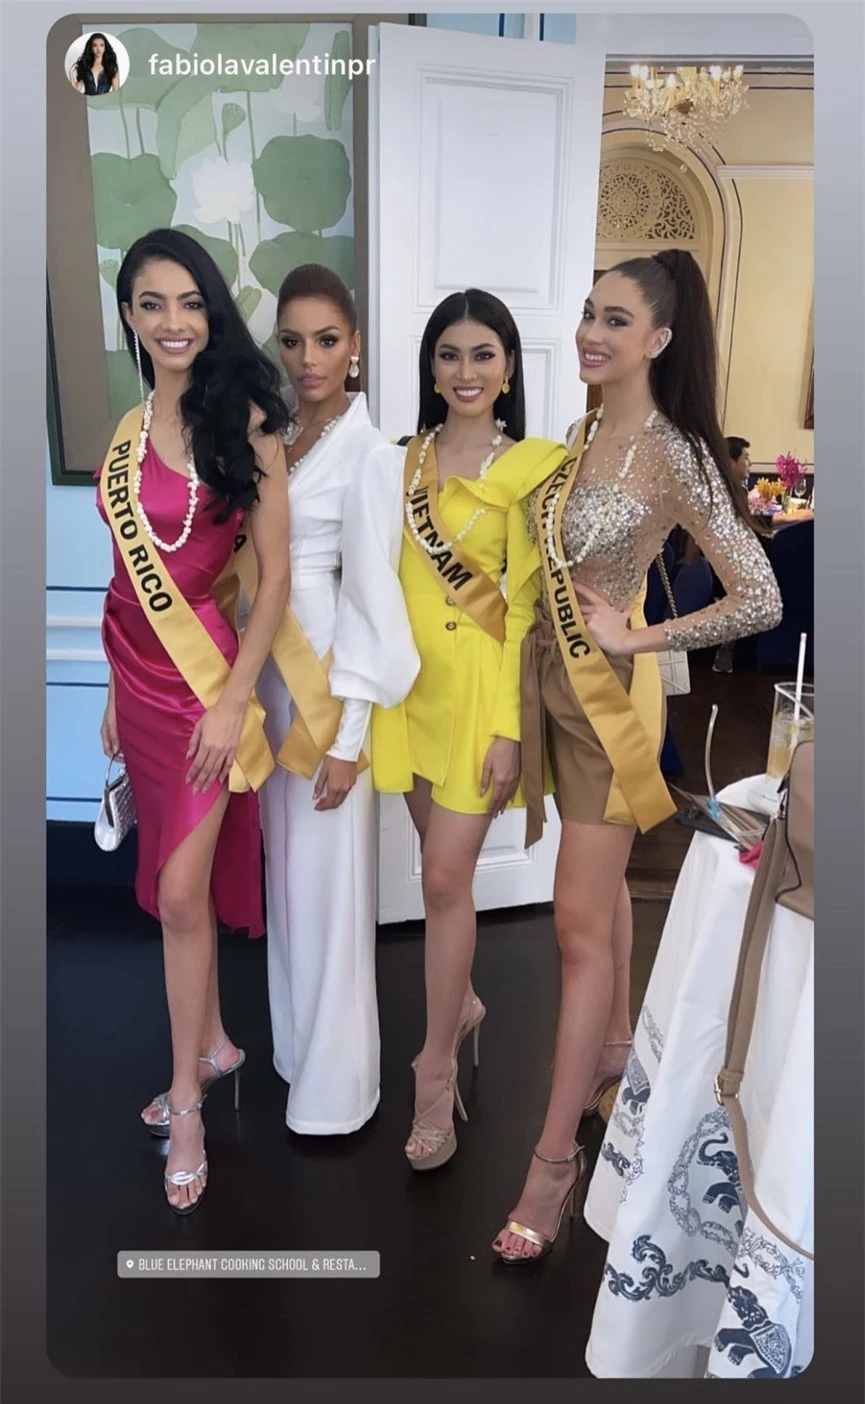 Lần thứ 2 mặc lại váy của Hương Giang ở Miss Grand, Ngọc Thảo nổi bật với màu vàng rực rỡ - ảnh 7